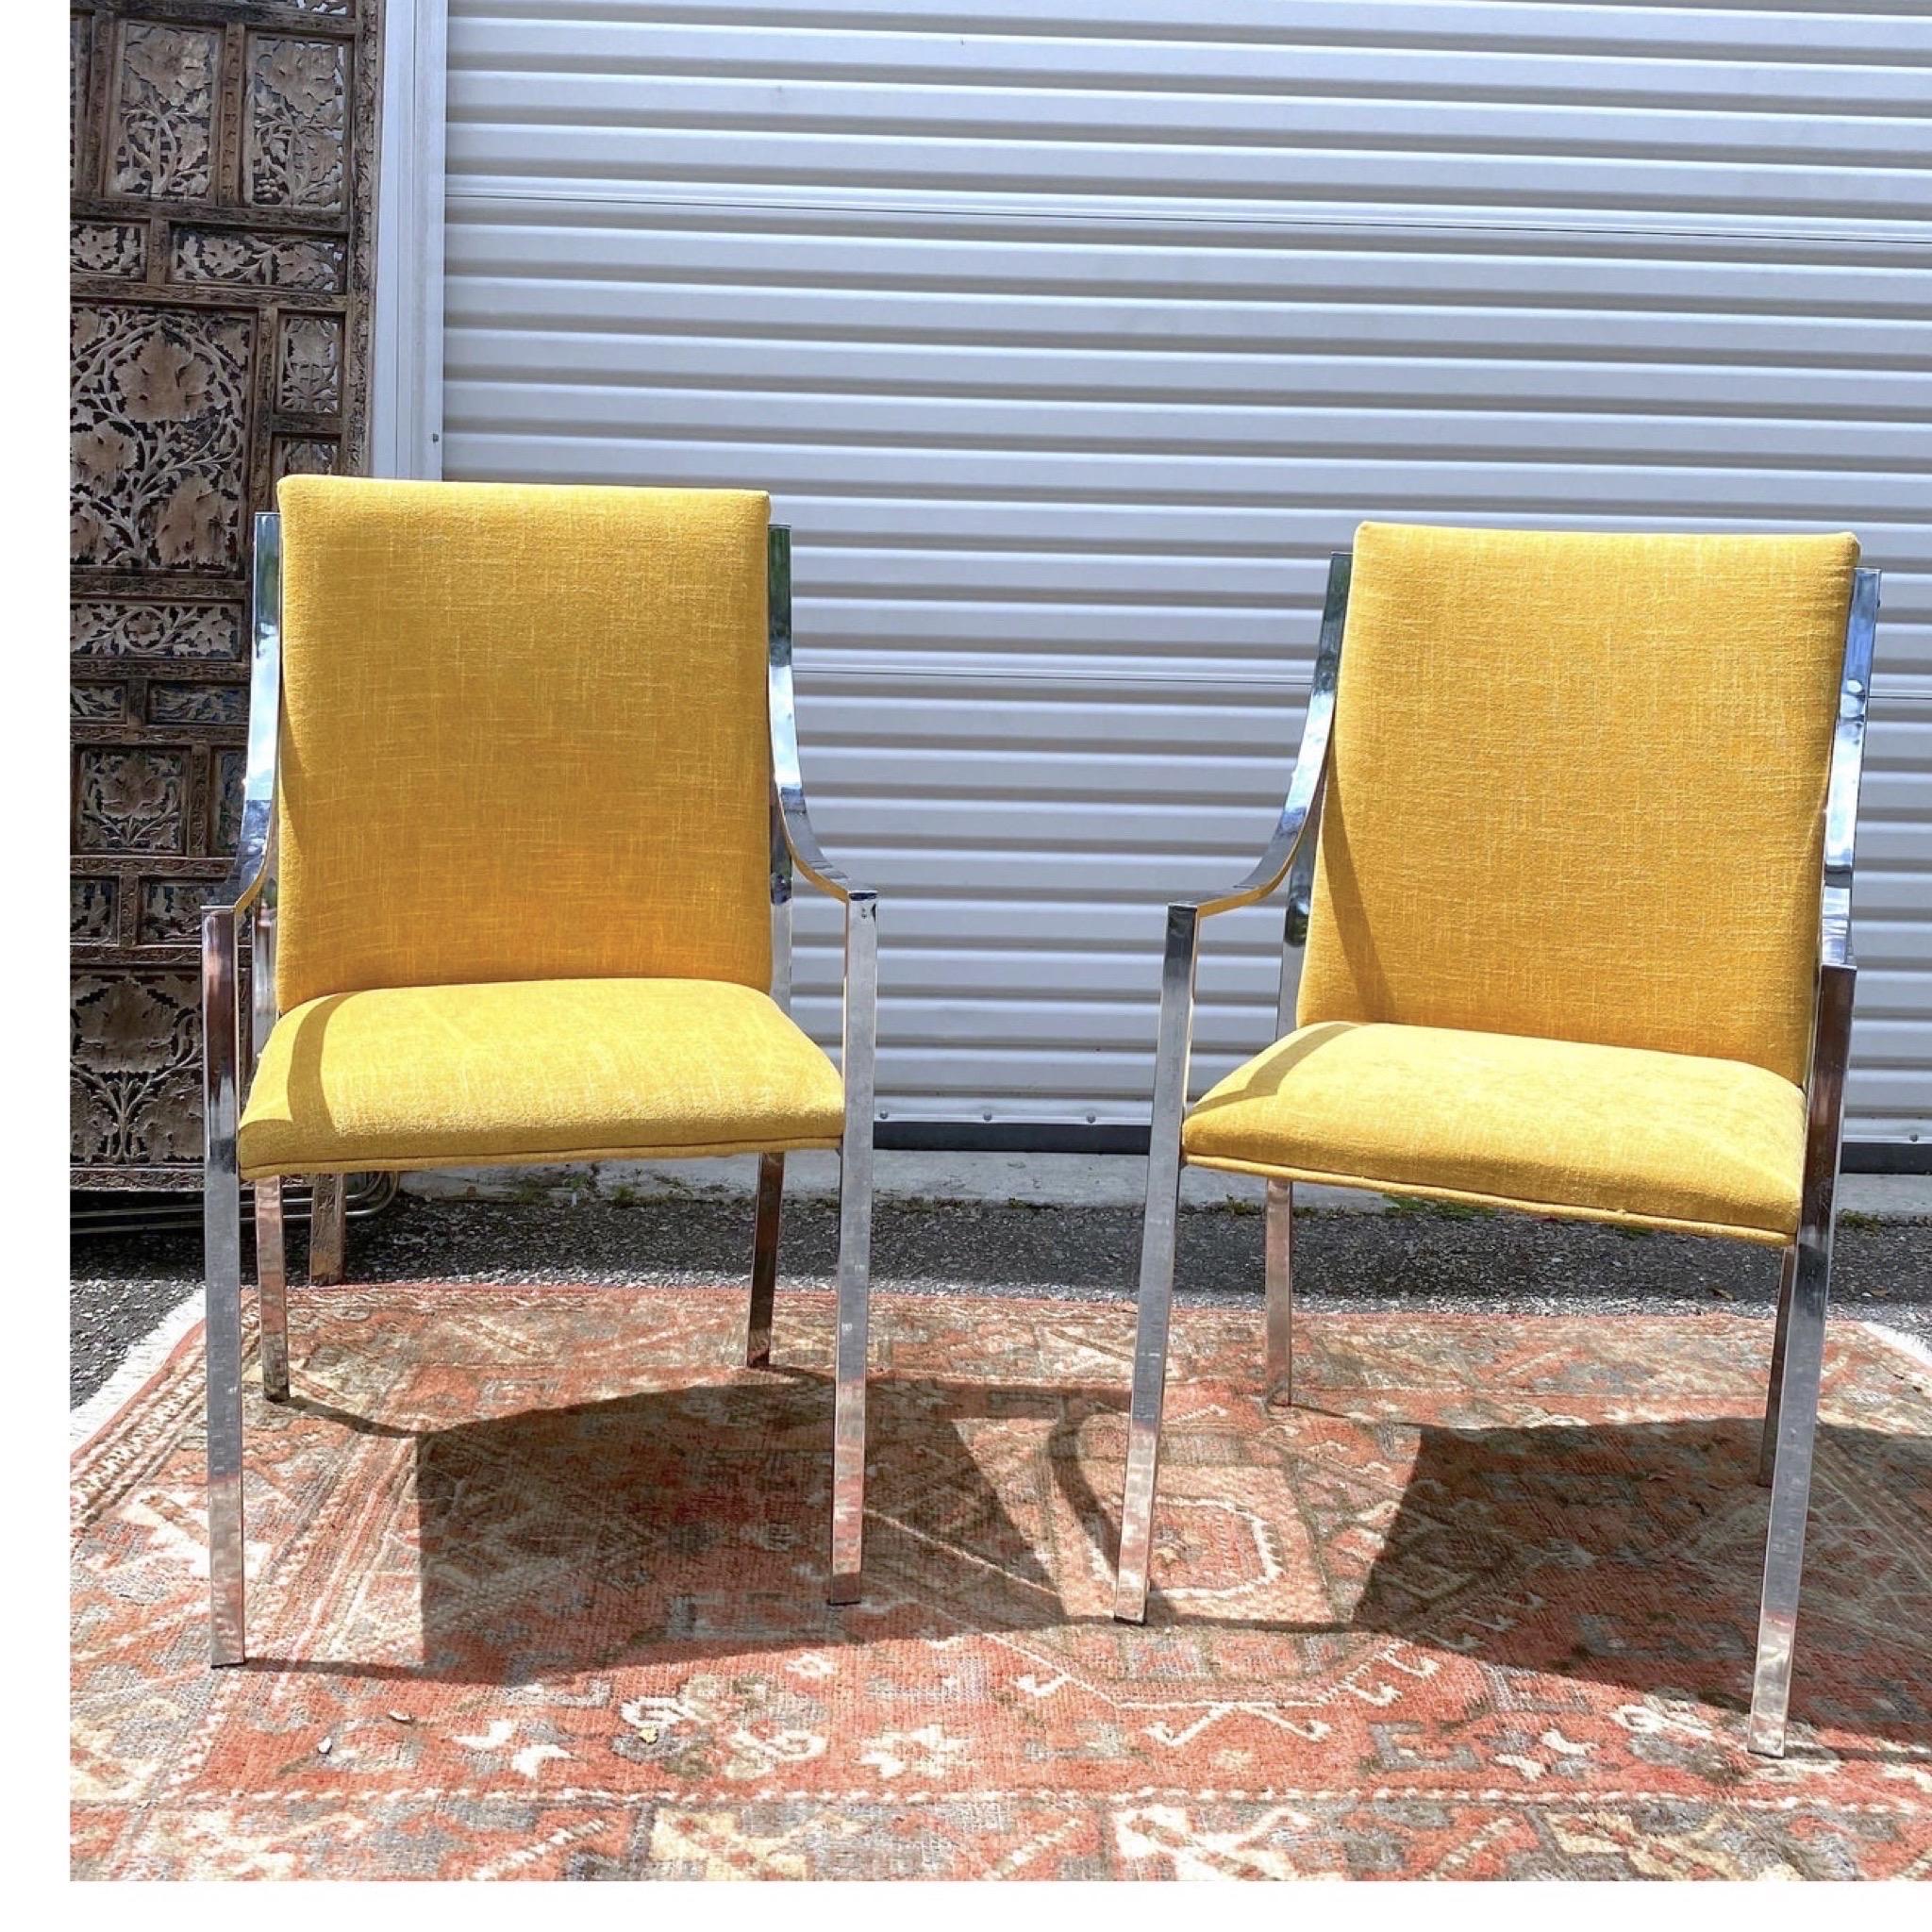 Pierre Cardin für Dillingham Chrom Beistellstühle - Paar
Diese verchromten Stühle sind neu in leuchtendem Senfgelb gepolstert und haben eine sehr schlanke Form. Ich habe mich für eine einfarbige Farbe entschieden, damit sich der Rahmen des Stuhls